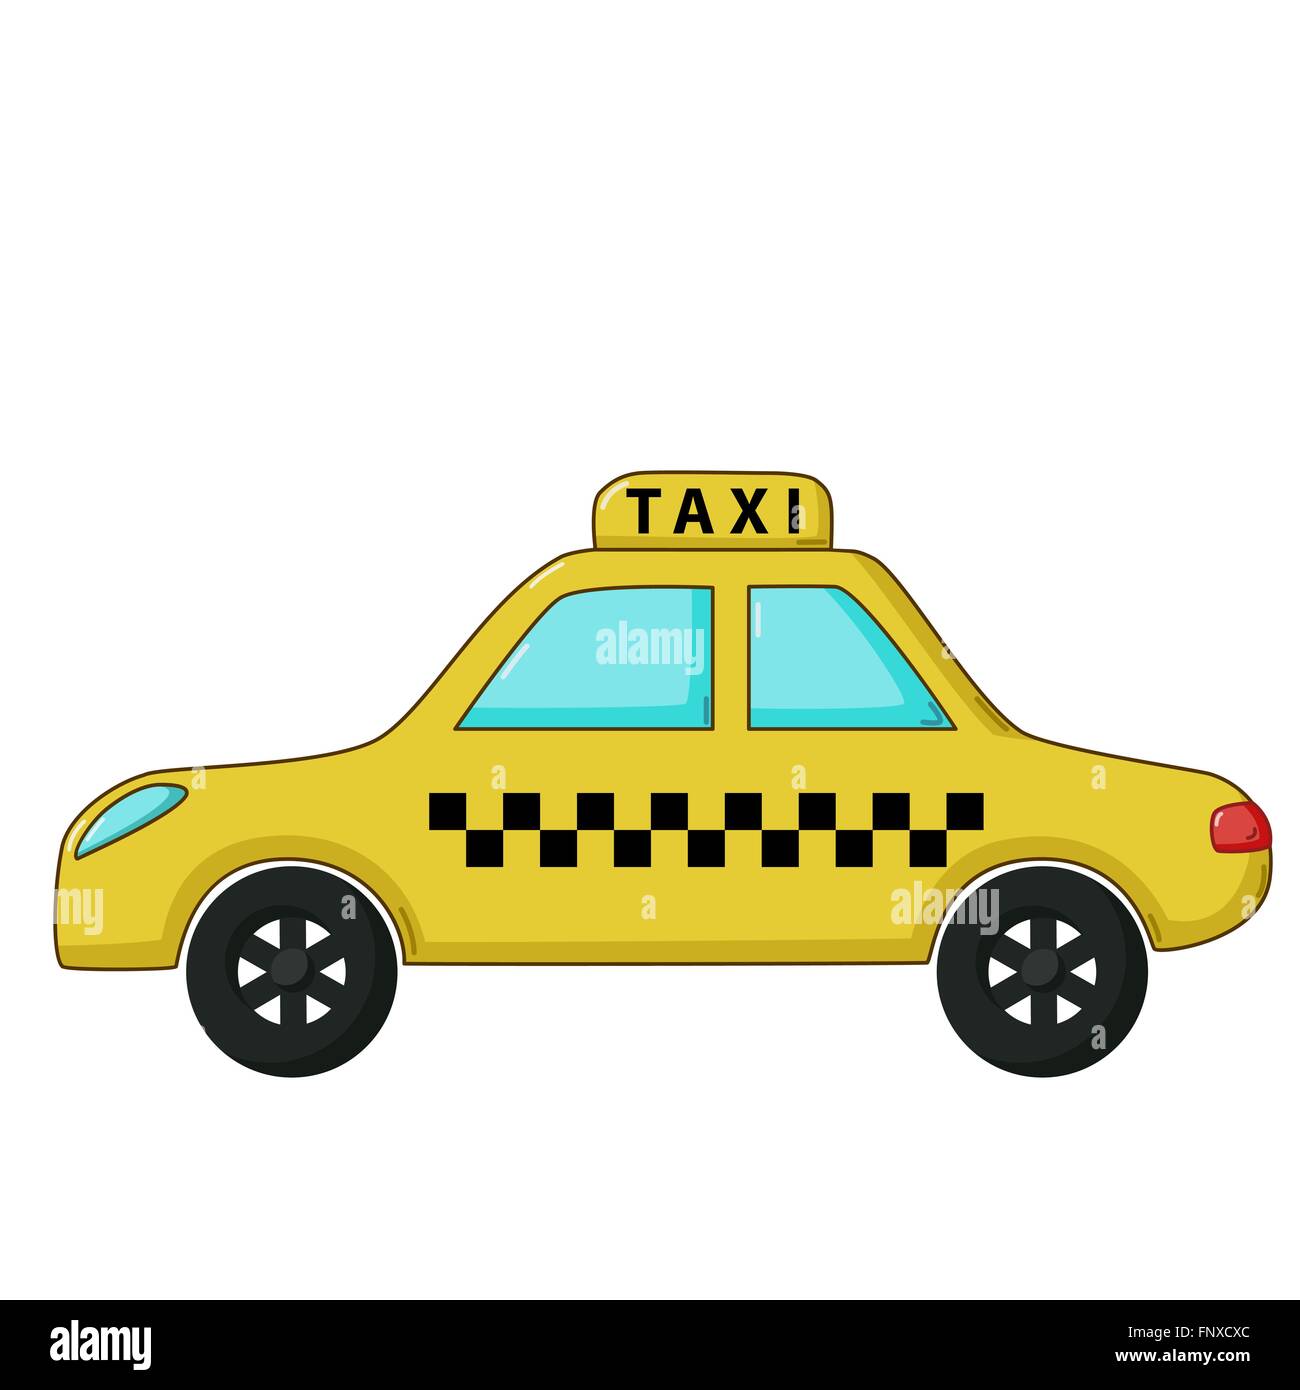 Gelbes Auto redaktionelles stockbild. Illustration von transport - 110604354